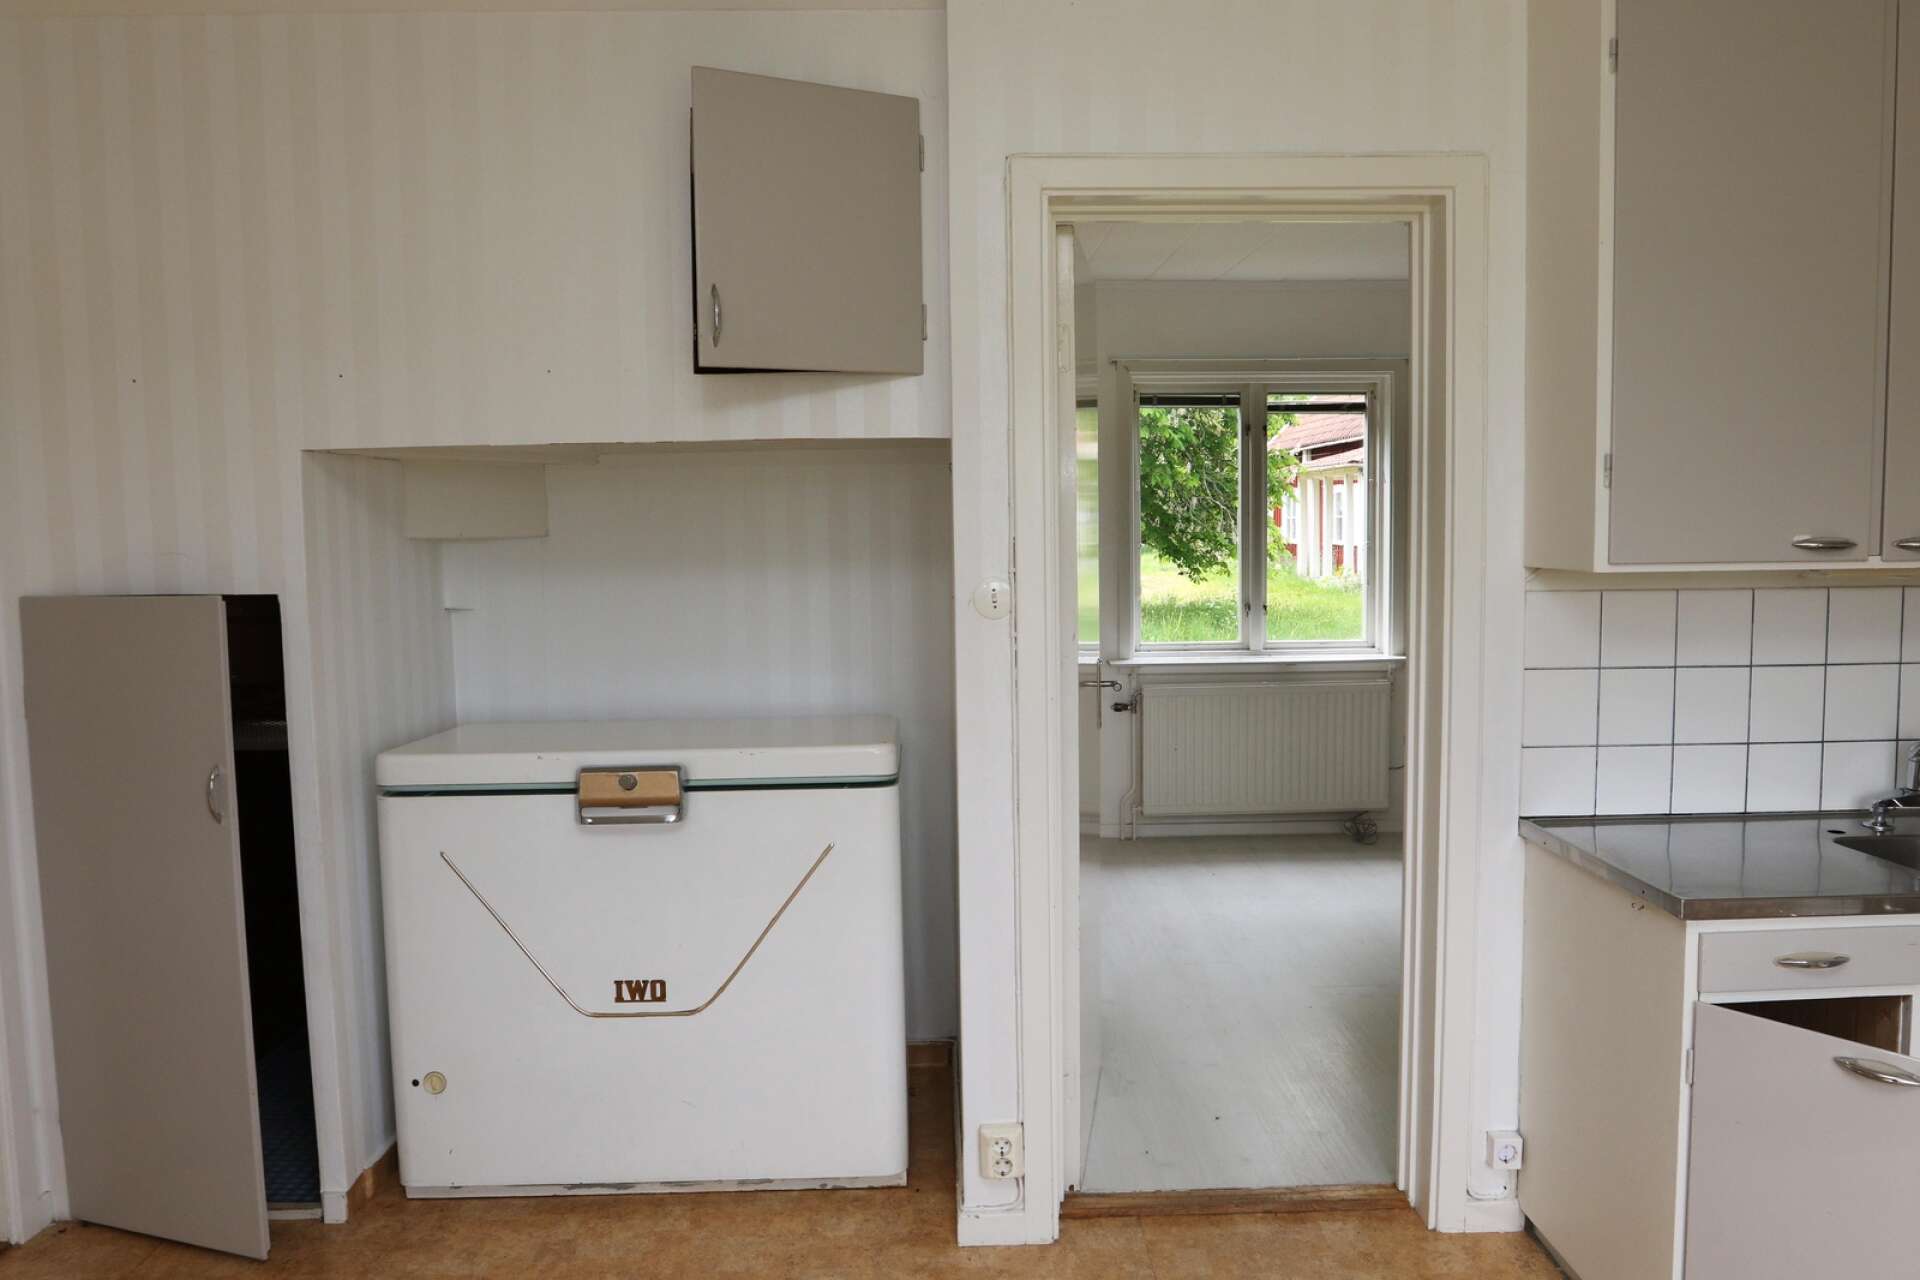 I det lilla köket står en frysbox från det klassiska Mariestadsföretaget Iwo.